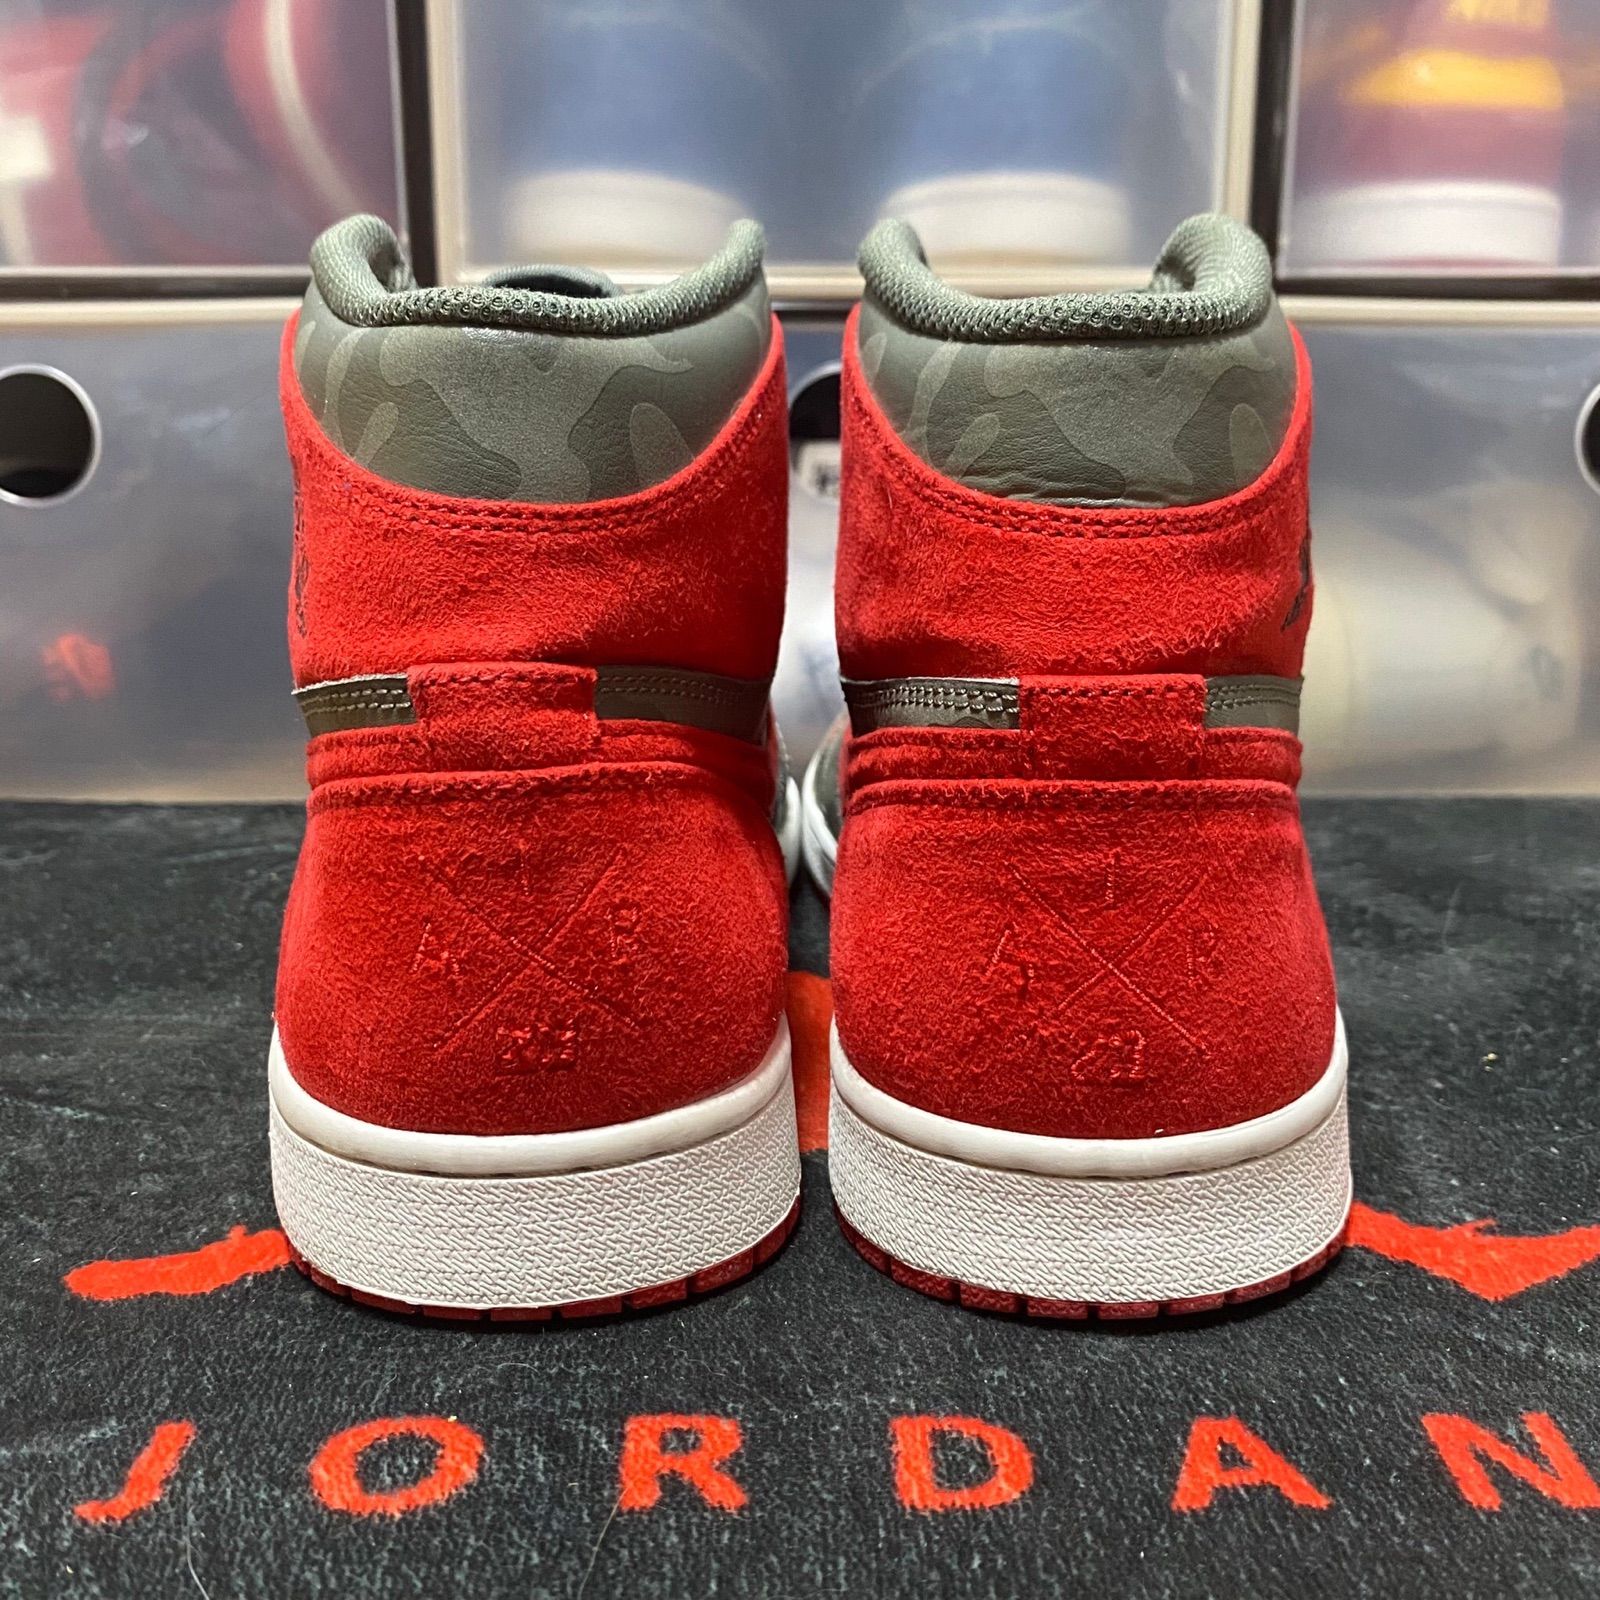 Air Jordan 1 Retro High Premium Camo Red